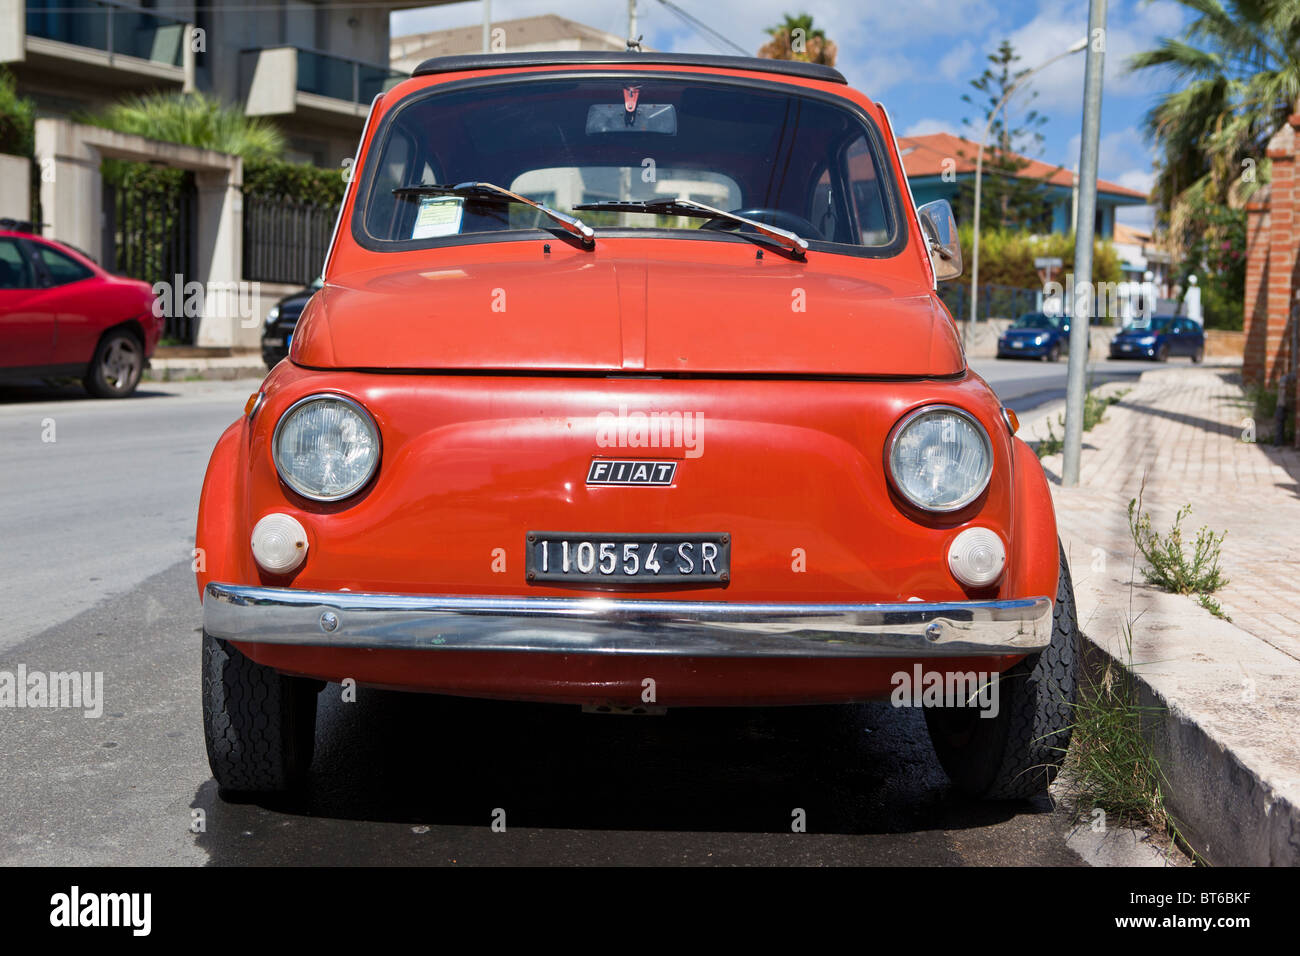 Red Fiat 500 Cinquecento Topolino in Sicily, Italy Stock Photo